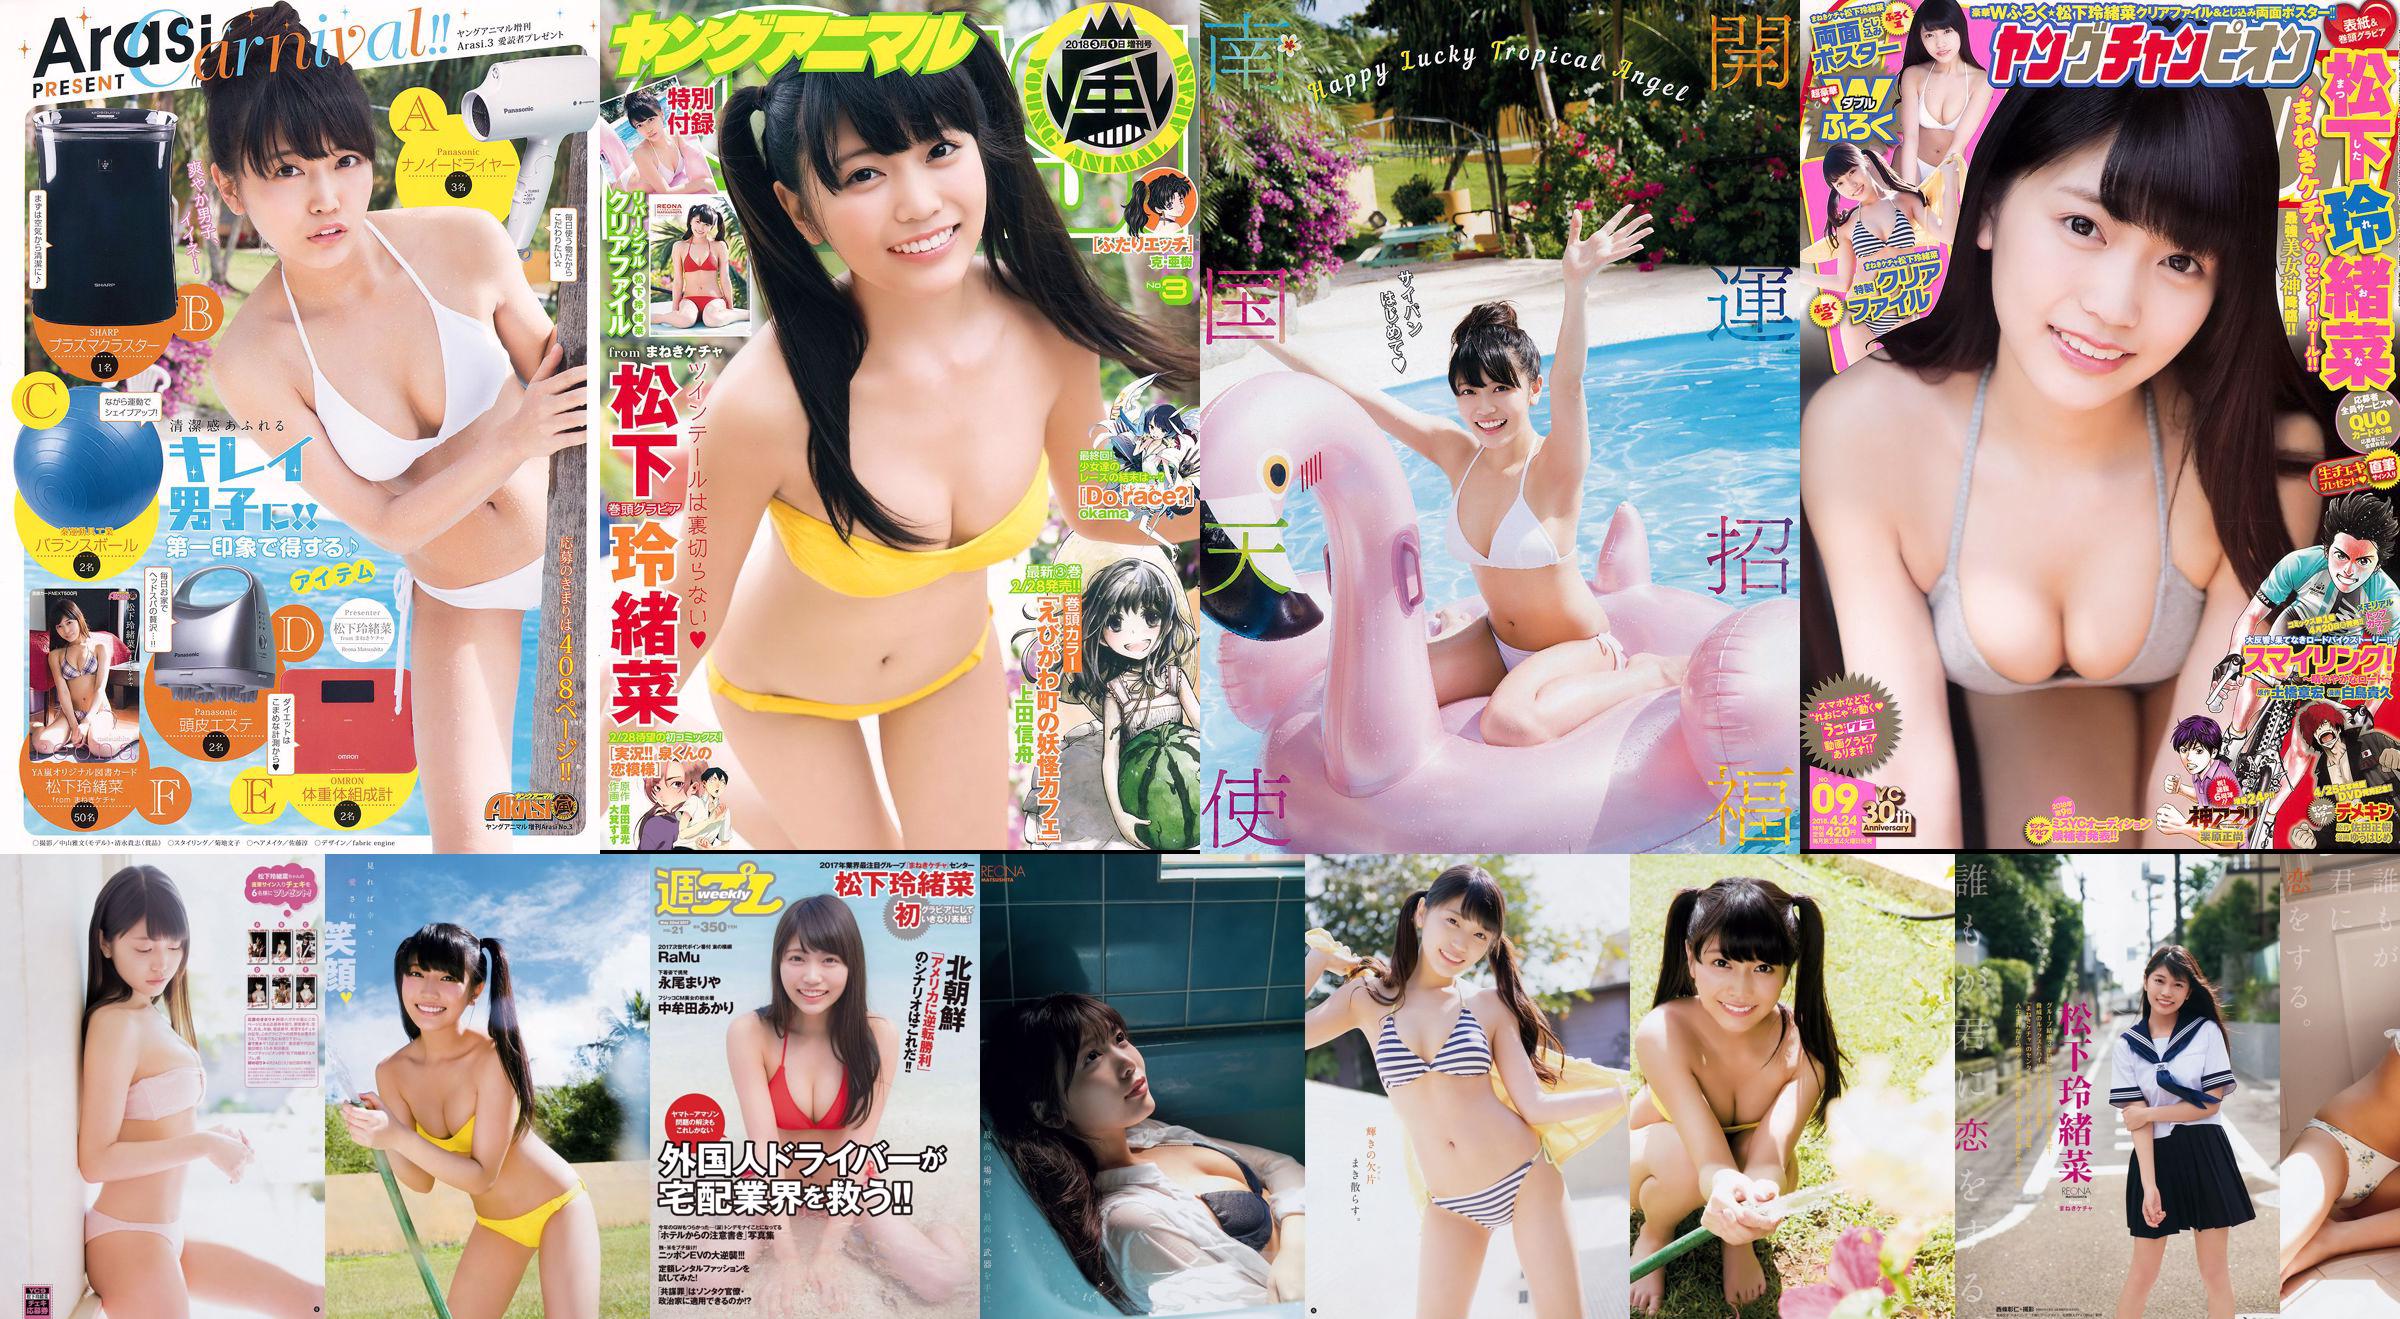 Reona Matsushita RaMu Akari Takamuta Mariya Nagao Suzuka Akimoto Michiko Tanaka Hazuki Nishioka [Weekly Playboy] 2017 No.21 Photographie No.e38053 Page 6